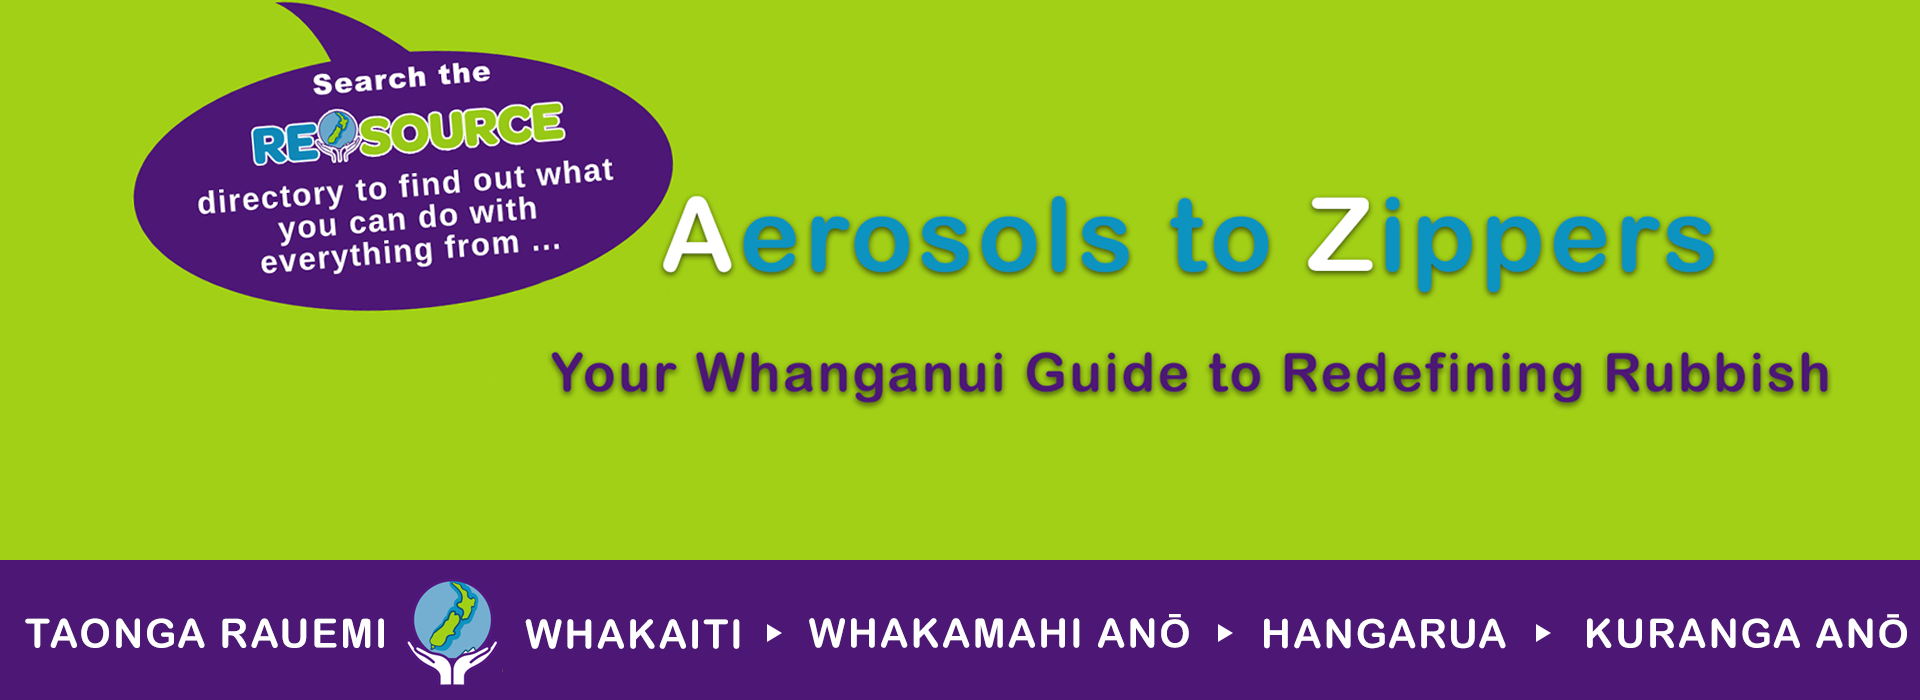 ReSources Whanganui